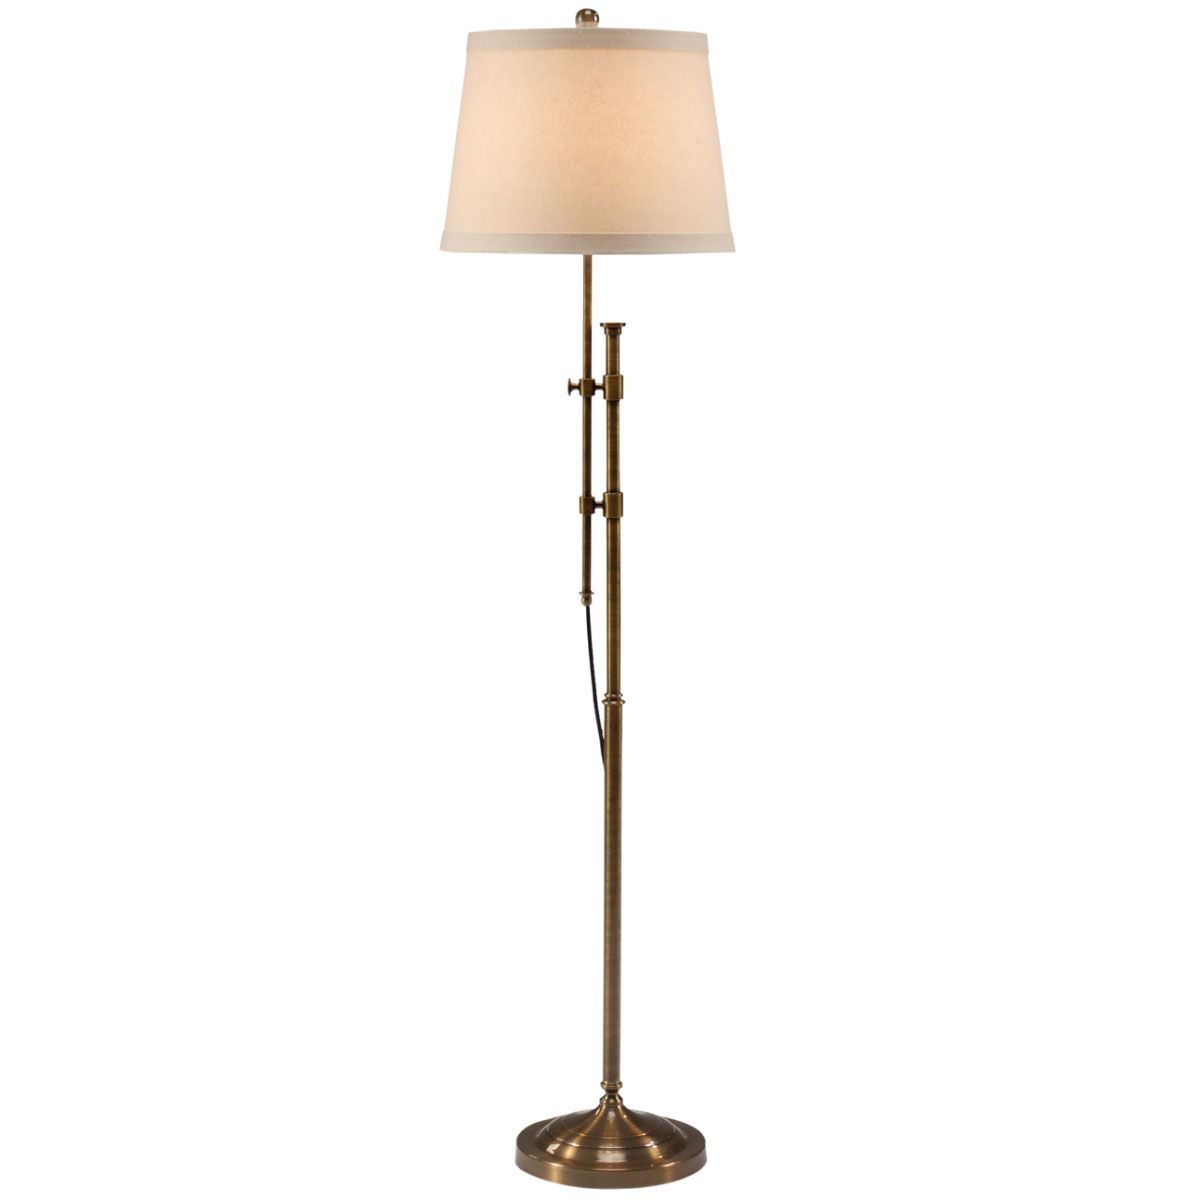 Adjustable Floor Lamp With Regard To Adjustable Height Floor Lamps (Photo 5 of 15)